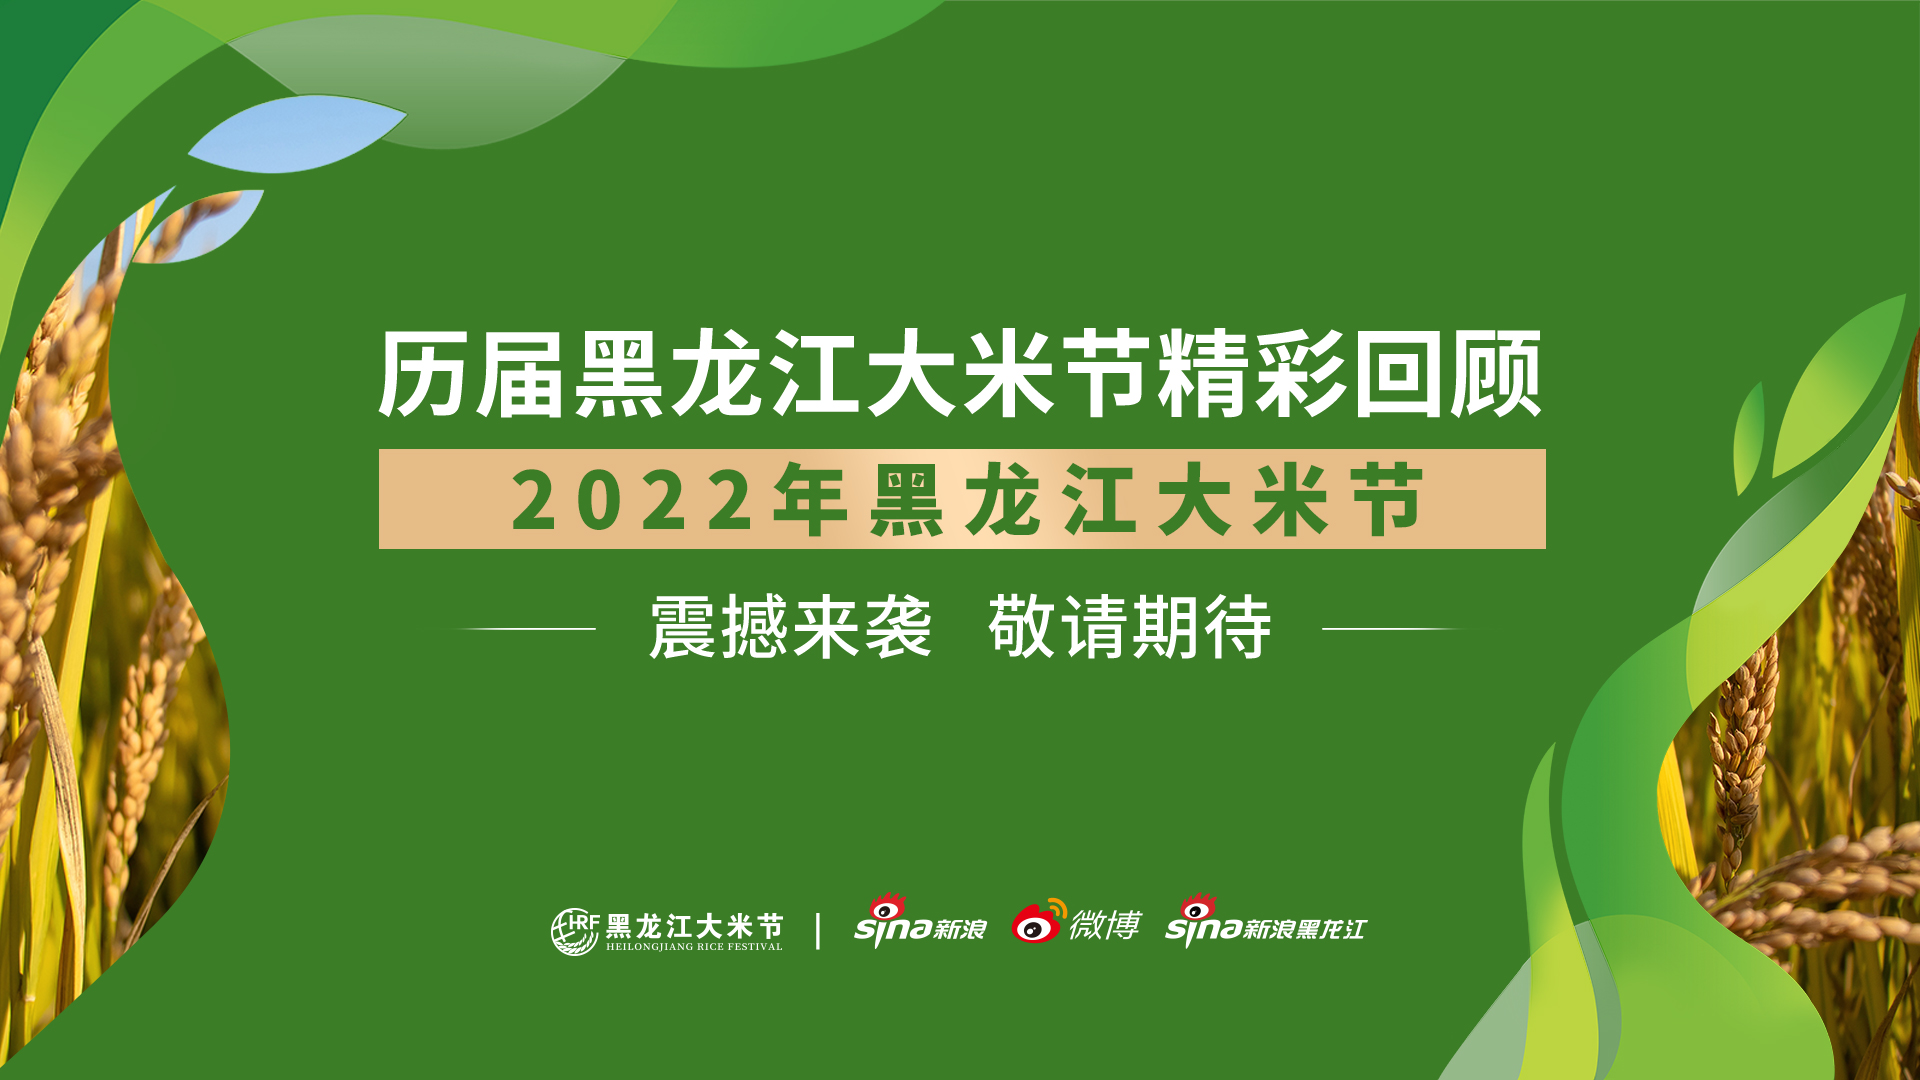 2022年黑龙江大米节